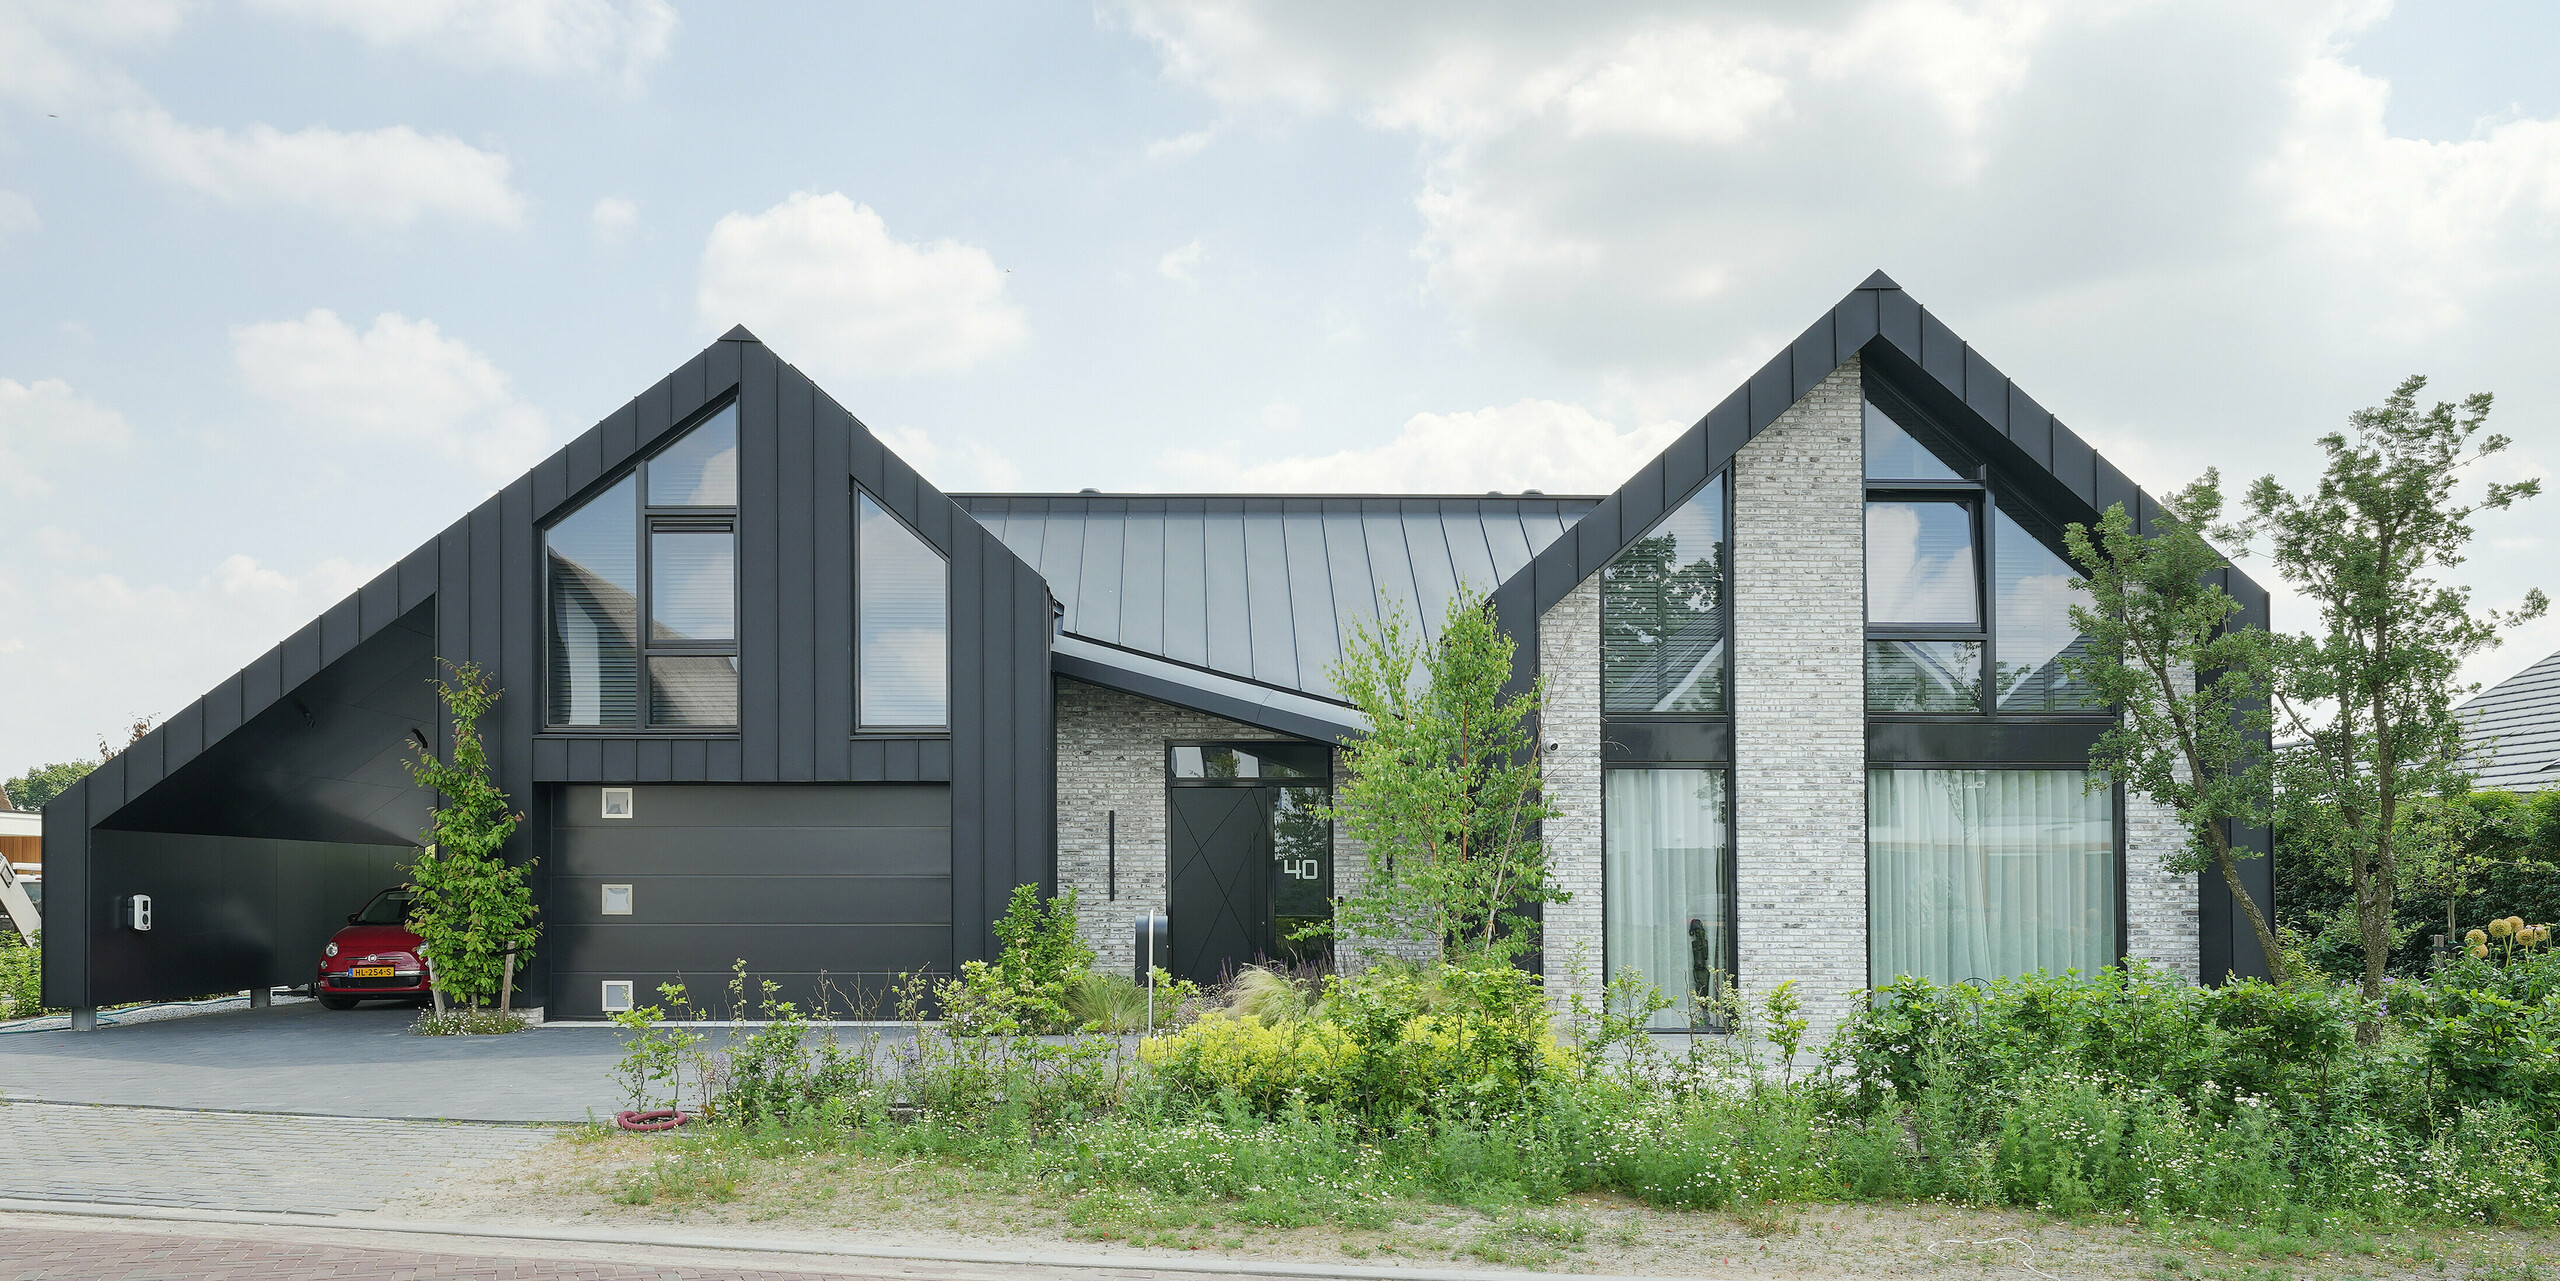 Moderne Wohnarchitektur in Veenendaal, Niederlande, mit dem einzigartigen Zusammenspiel von PREFALZ und einer Fassade, die neben Stehfalzpaneelen aus Aluminium auch Naturstein und große Glasflächen integriert. Das Haus hat markante, spitze Giebel, die dem Entwurf eine dynamische Silhouette verleihen. Das Grundstück ist von einer gepflegten Grünanlage und einer angenehmen Zufahrt umgeben und fügt sich harmonisch in die ruhige Umgebung ein.